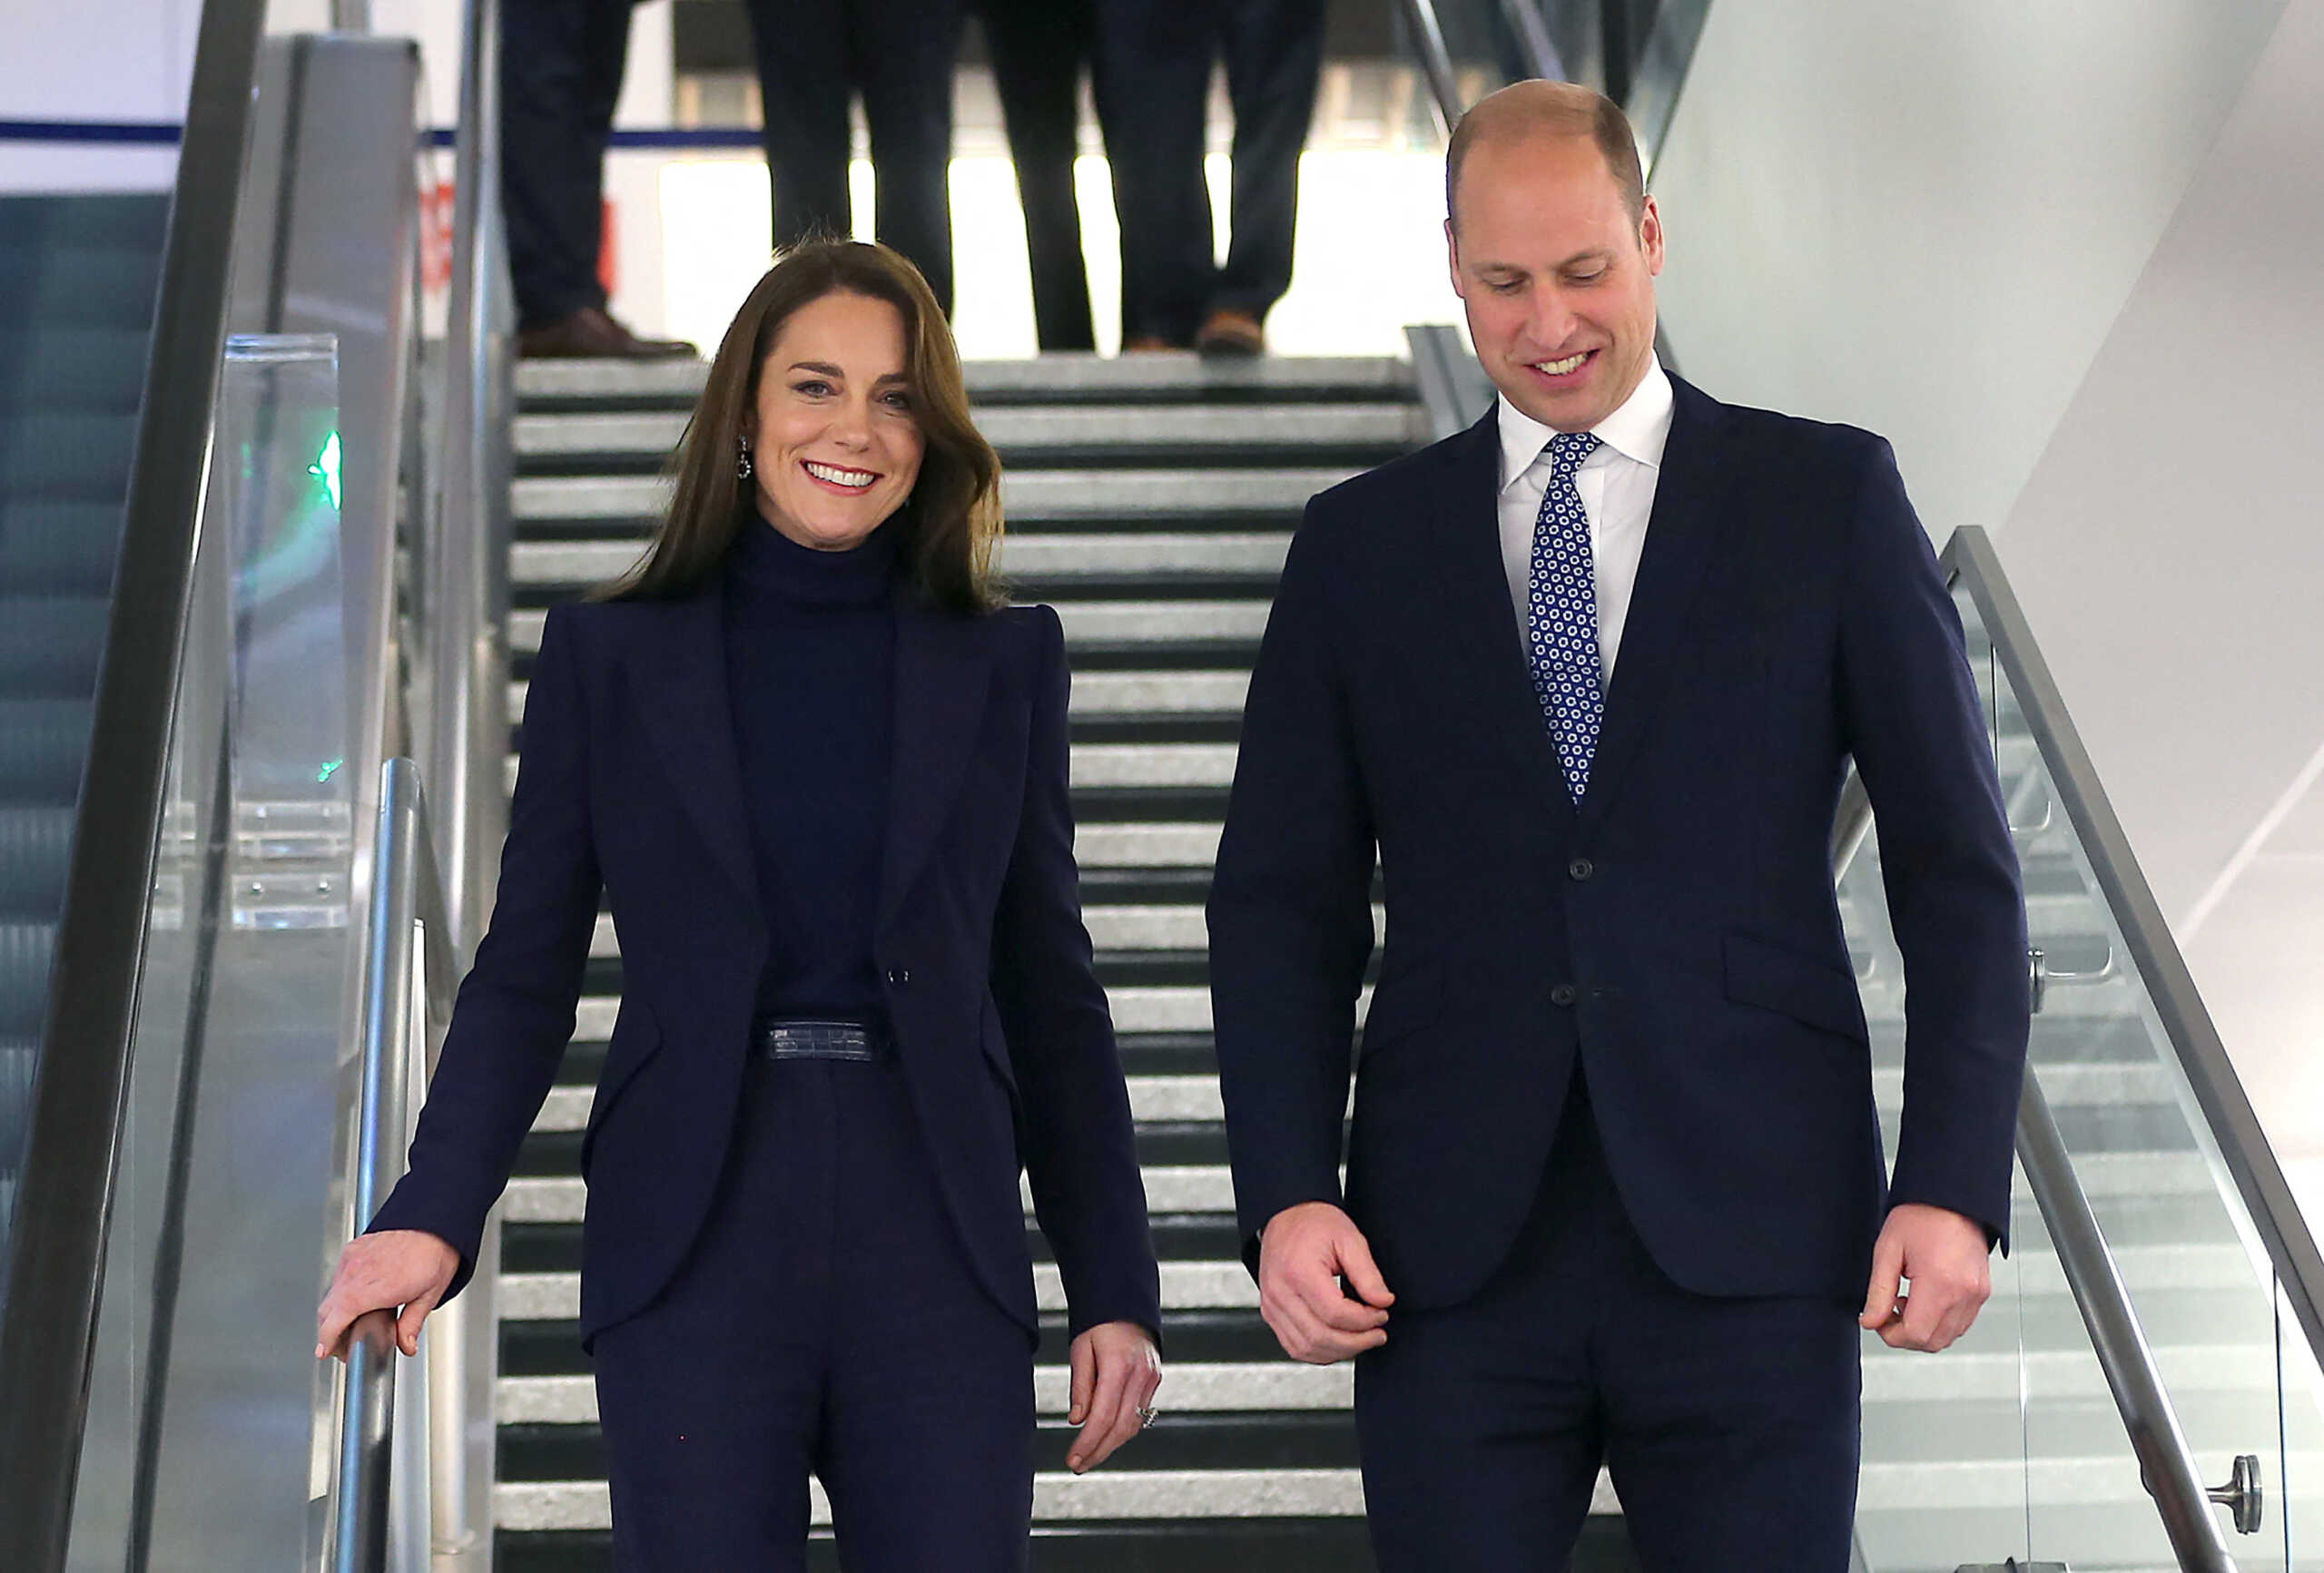 ΗΠΑ: Το πριγκιπικό ζεύγος Ουίλιαμ και Κέιτ έφτασε στη Βοστόνη – Θα συναντήσει τον πρόεδρο Μπάιντεν την Παρασκευή